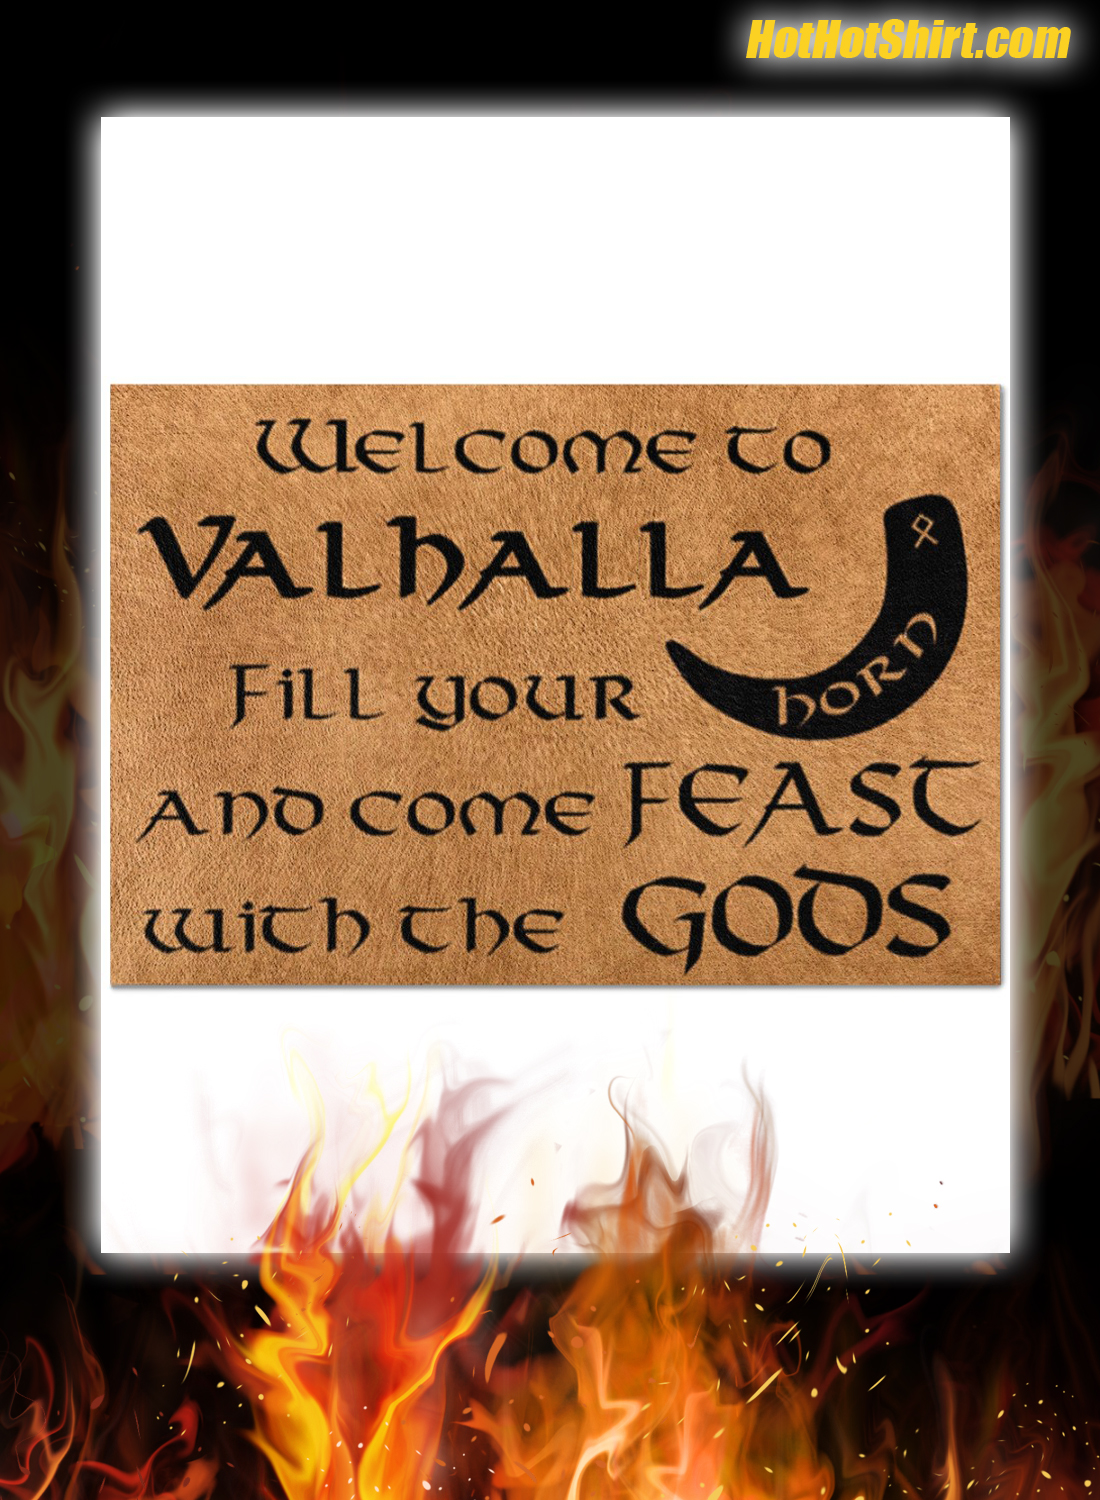 Wellcome to vahalla doormat